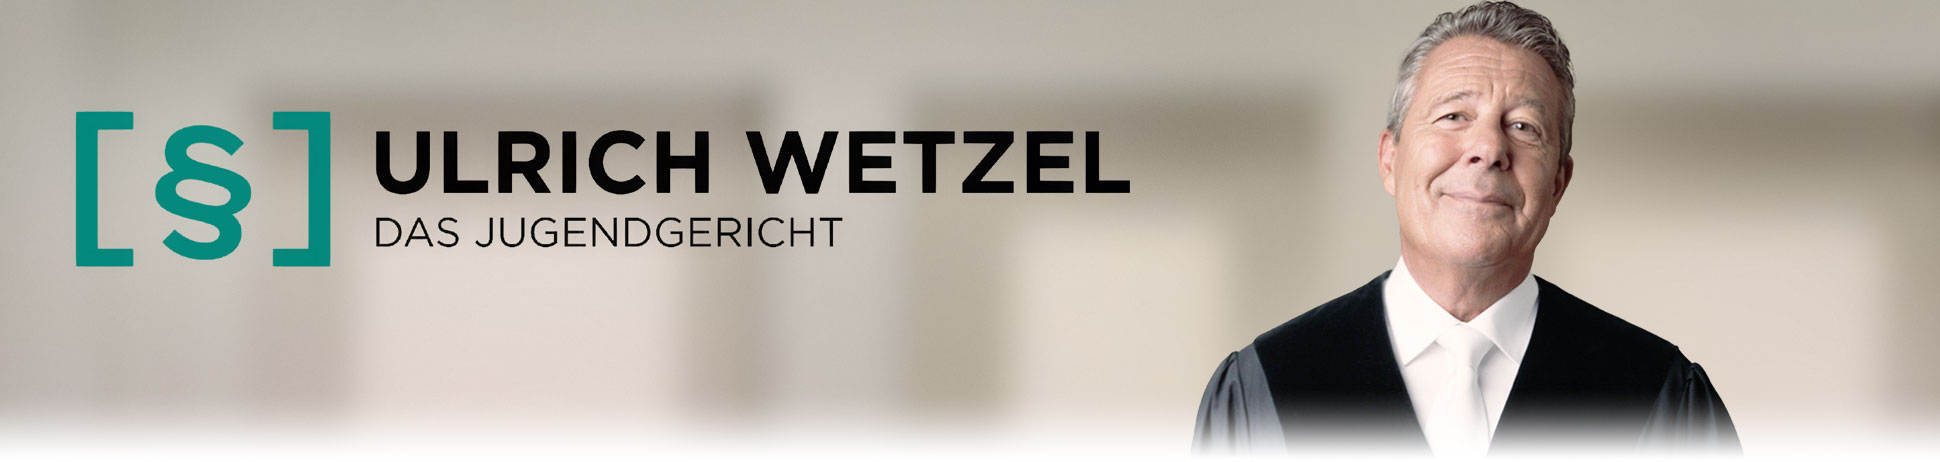 Ulrich Wetzel - Das Jugendgericht